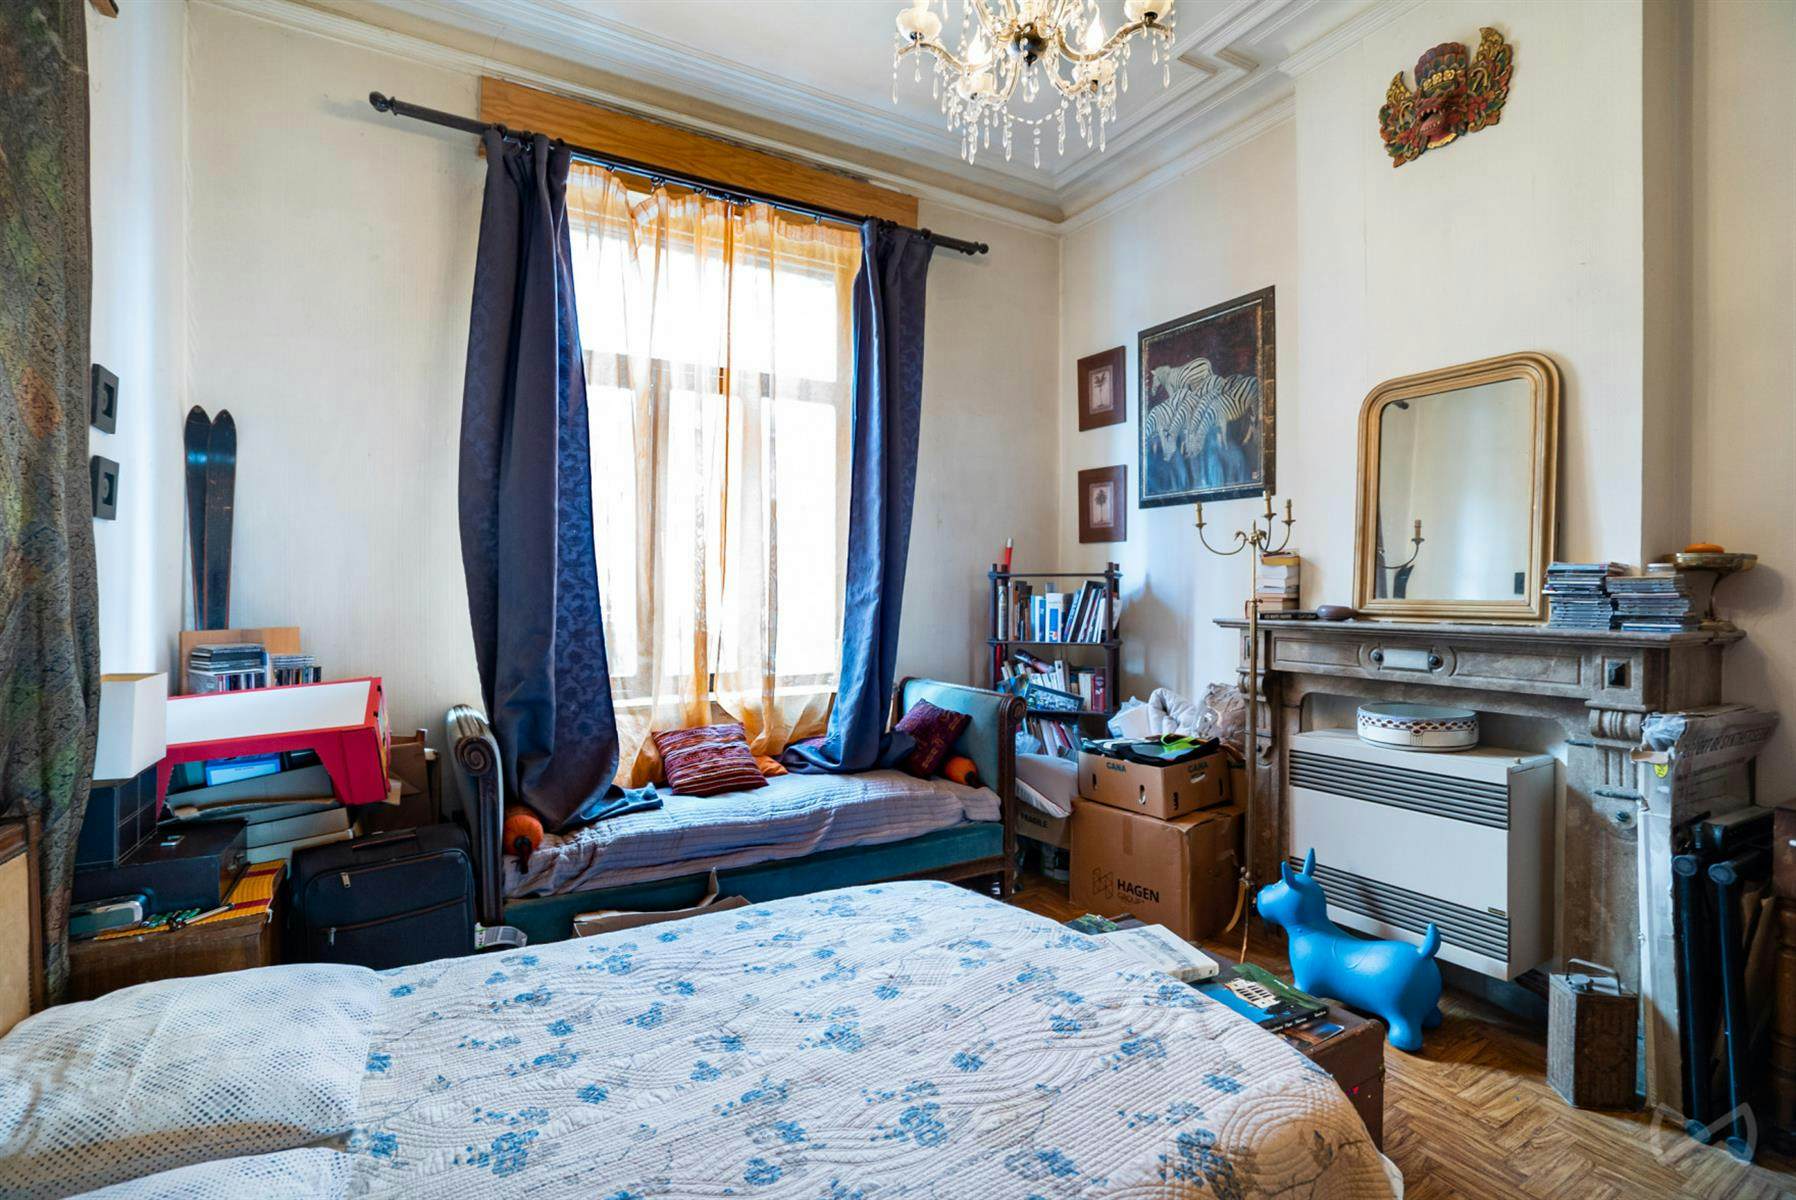 Foto 3 van 4 van Appartementsgebouw met drie slaapkamers in Braine-le-comte